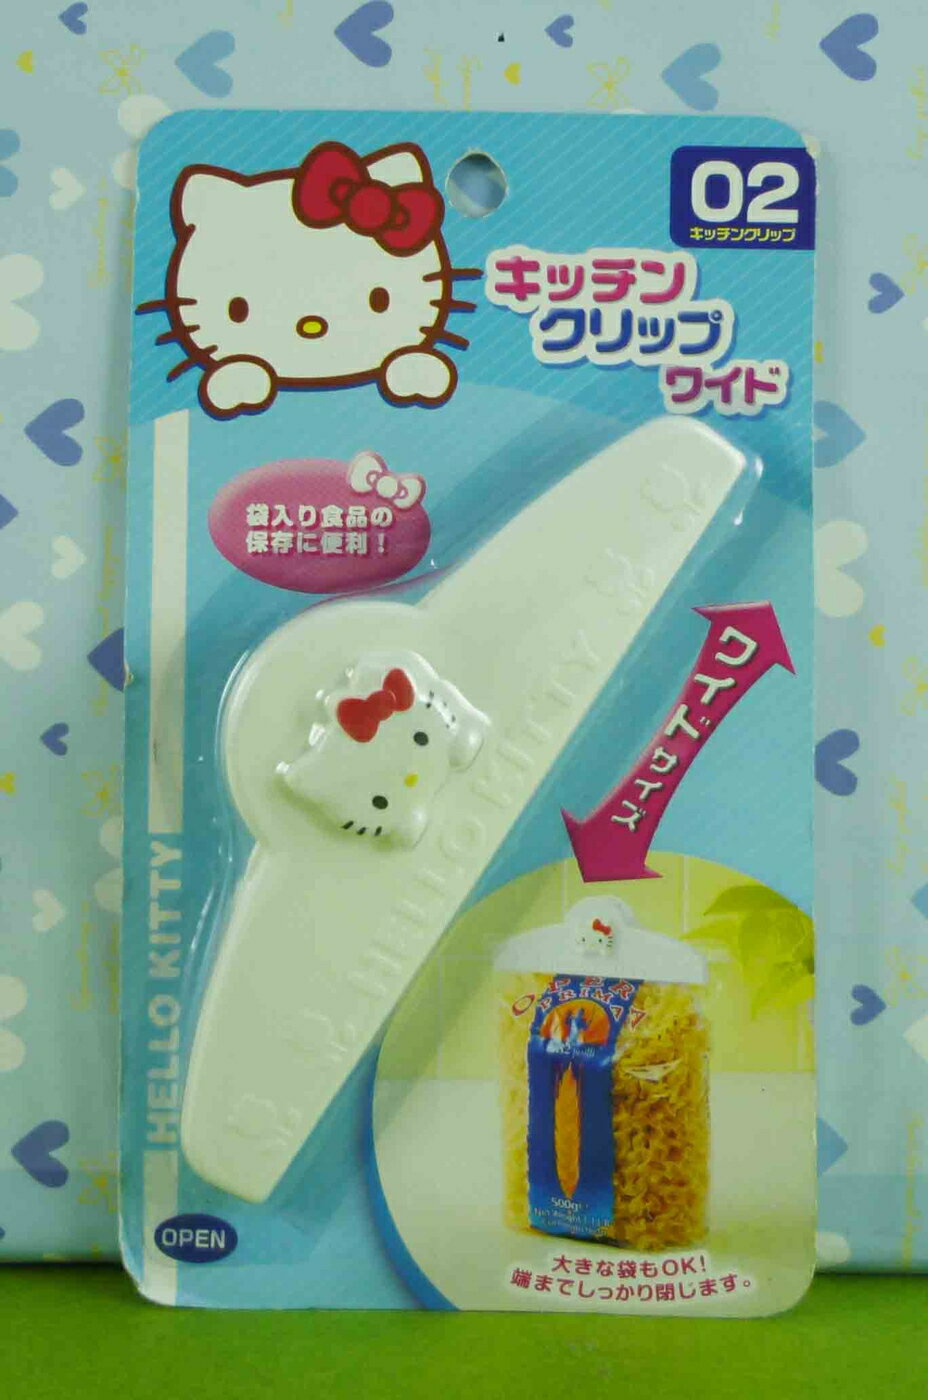 【震撼精品百貨】Hello Kitty 凱蒂貓 封口夾14.5CM-白色【共1款】 震撼日式精品百貨